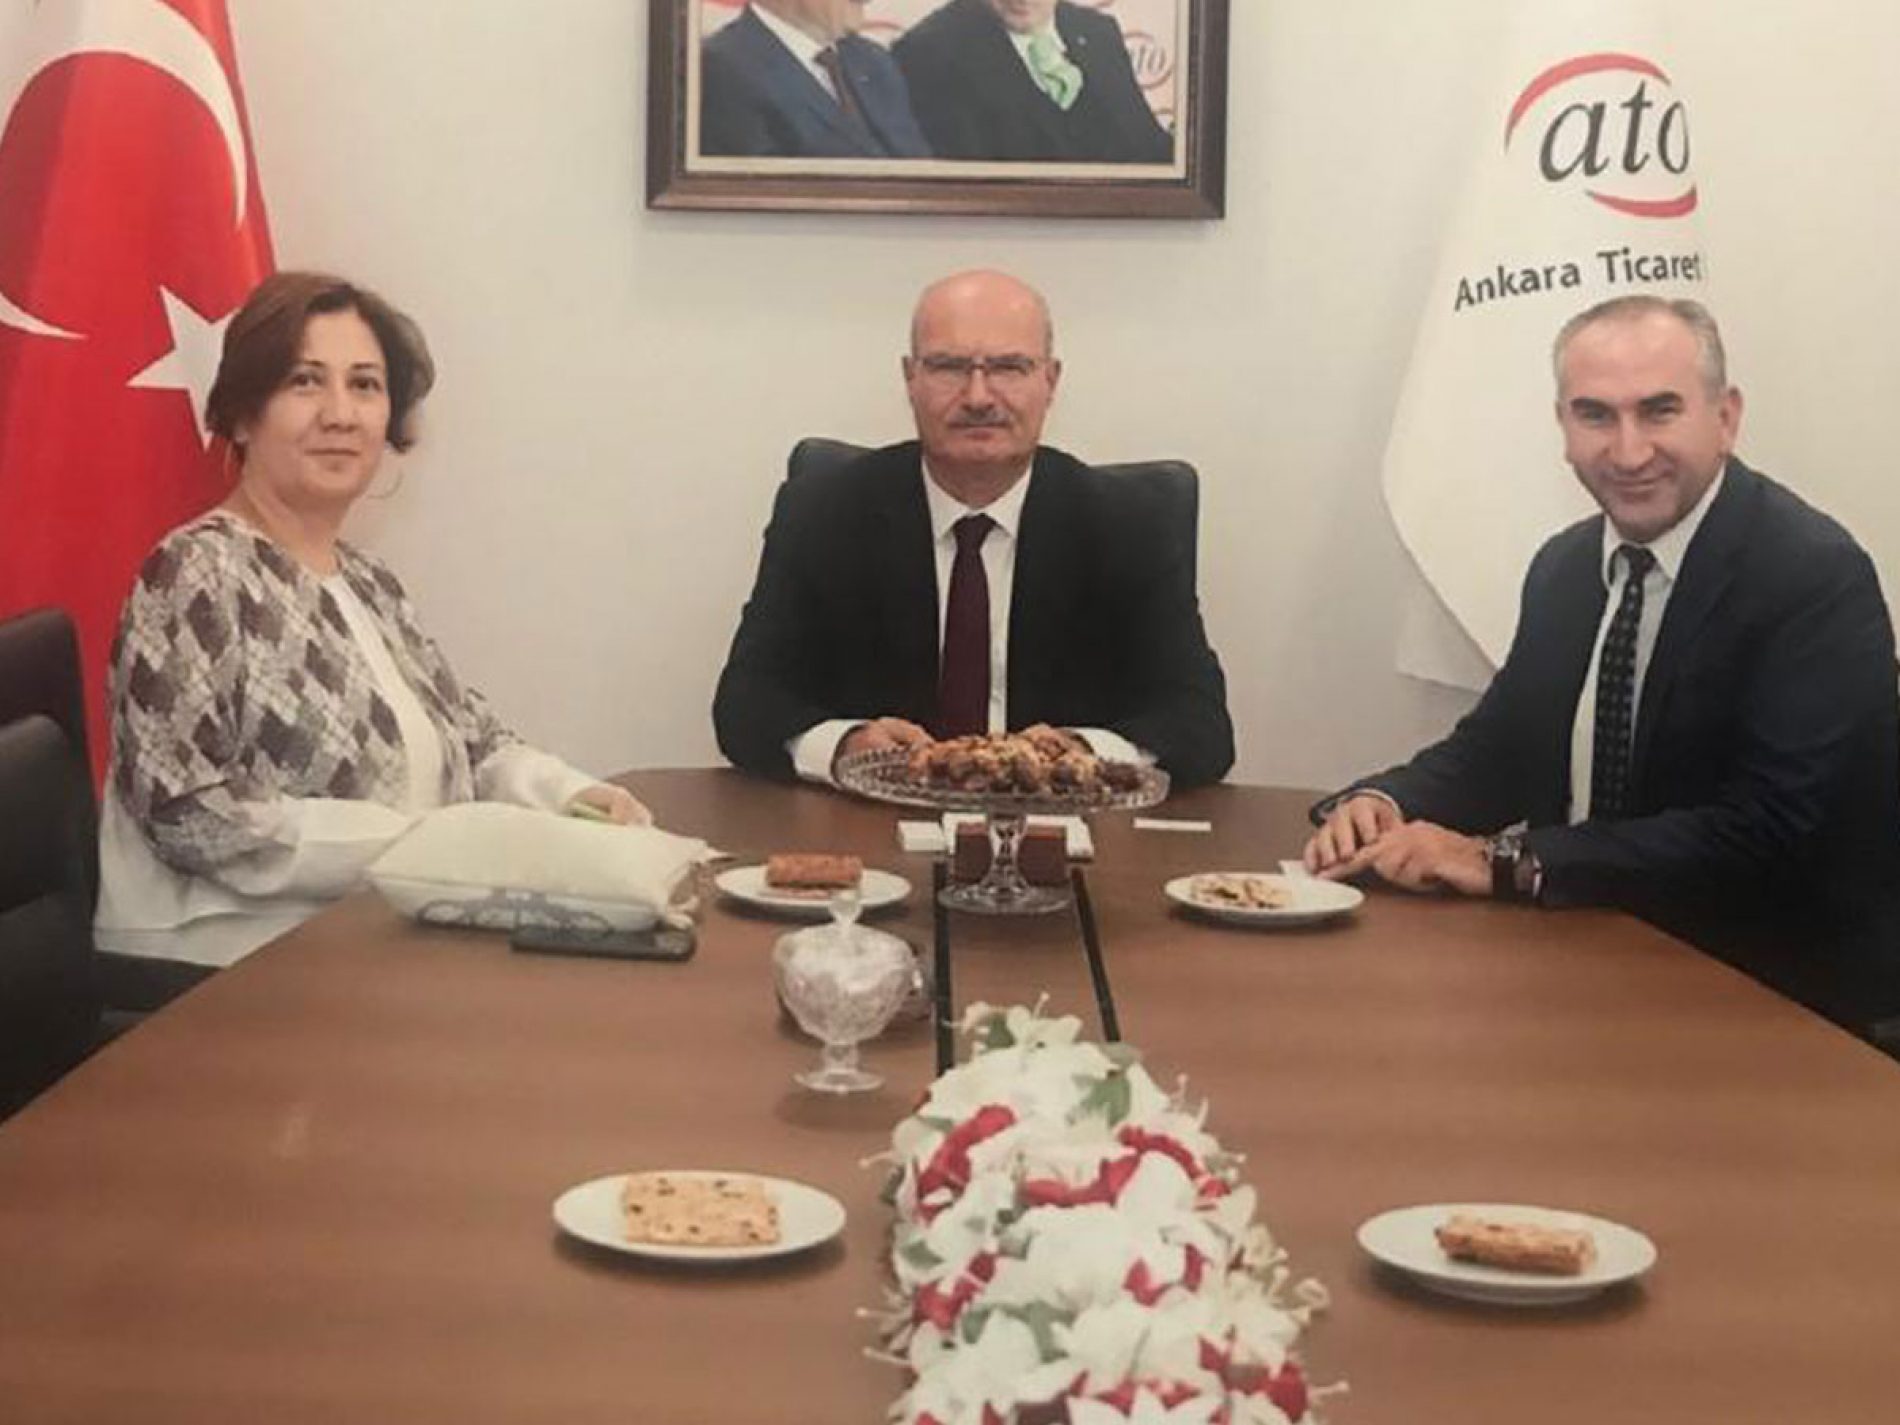 协会会长İhsan BEŞER拜访了安卡拉商会会长Gürsel BARAN